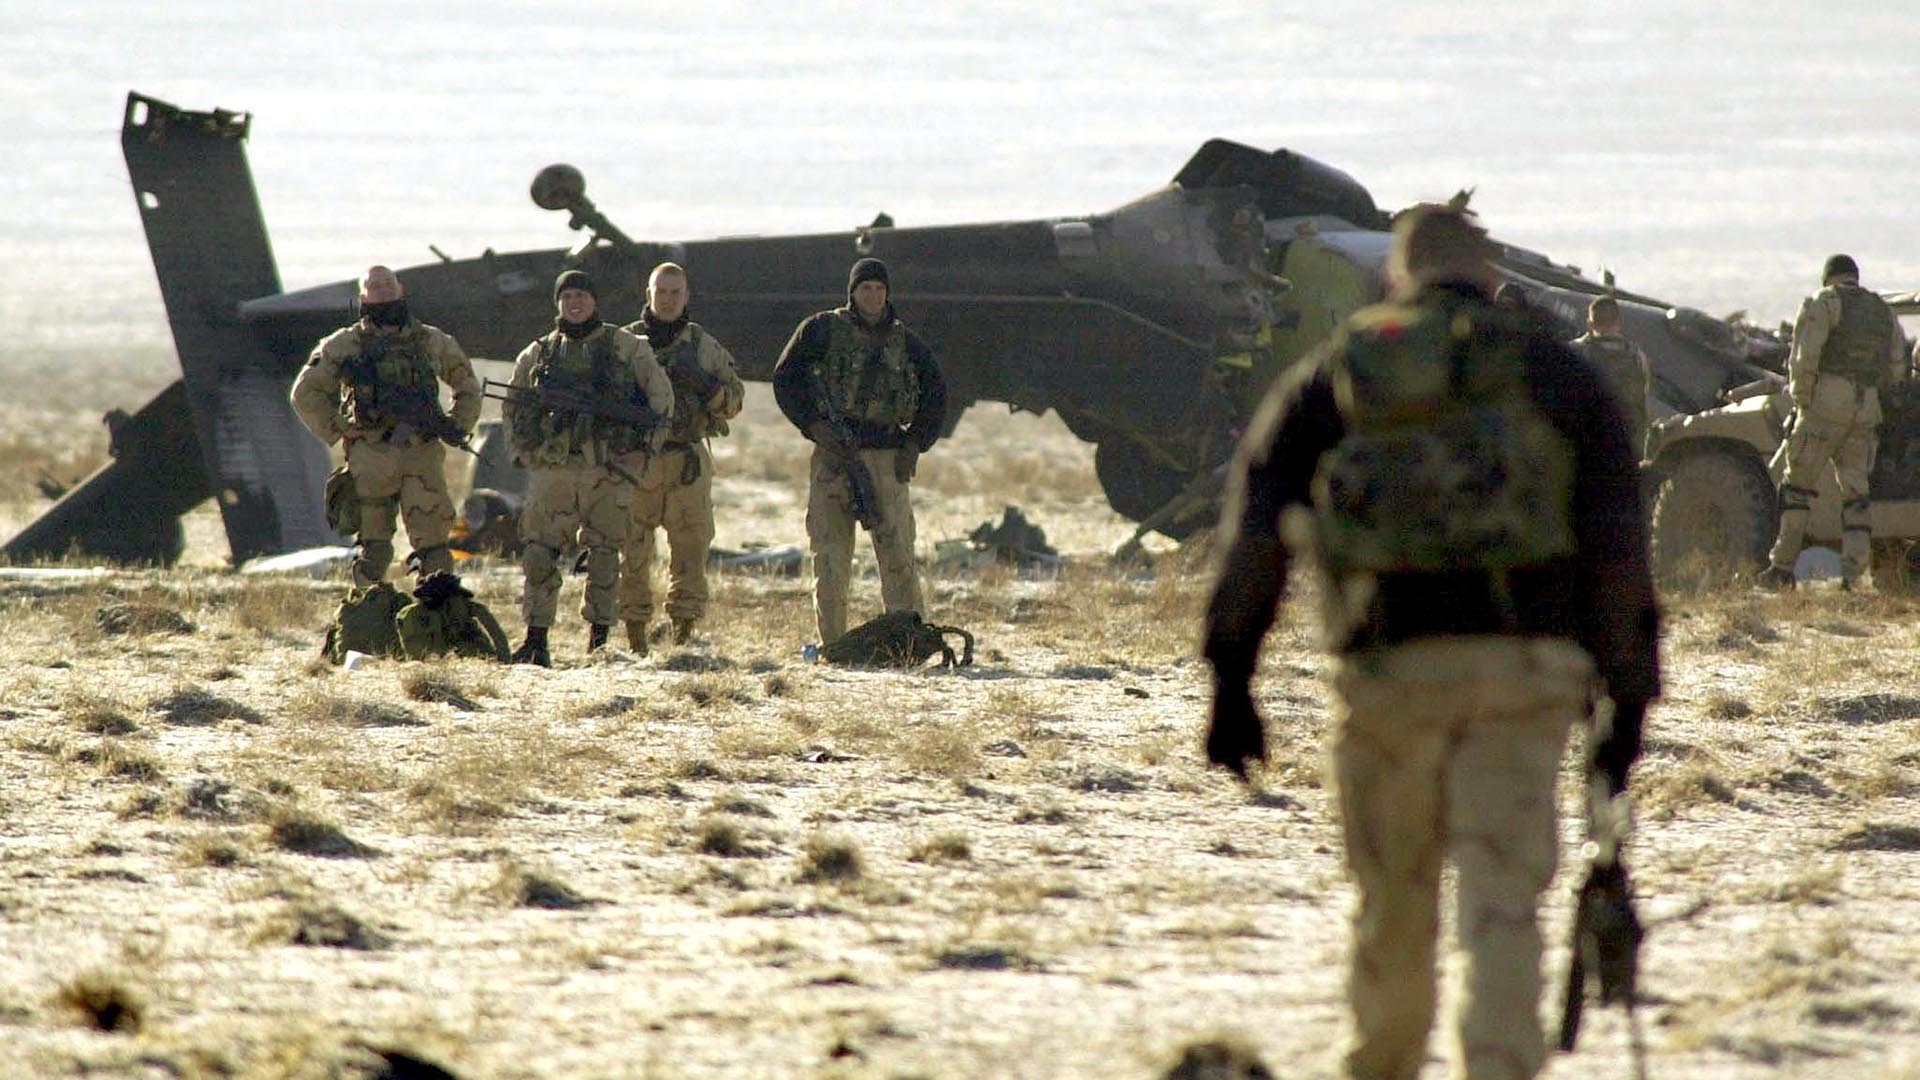 Un soldado estadounidense (derecha) camina hacia el lugar del accidente de un helicóptero BlackHawk, el 31 de enero de 2003, a 12 km (7,5 millas) de Bagram, al norte de Kabul, la principal base aérea estadounidense en Afganistán. Cuatro soldados estadounidenses murieron cuando su helicóptero Blackhawk se estrelló durante una misión de entrenamiento nocturna (AFP PHOTO / Tauseef MUSTAFA)